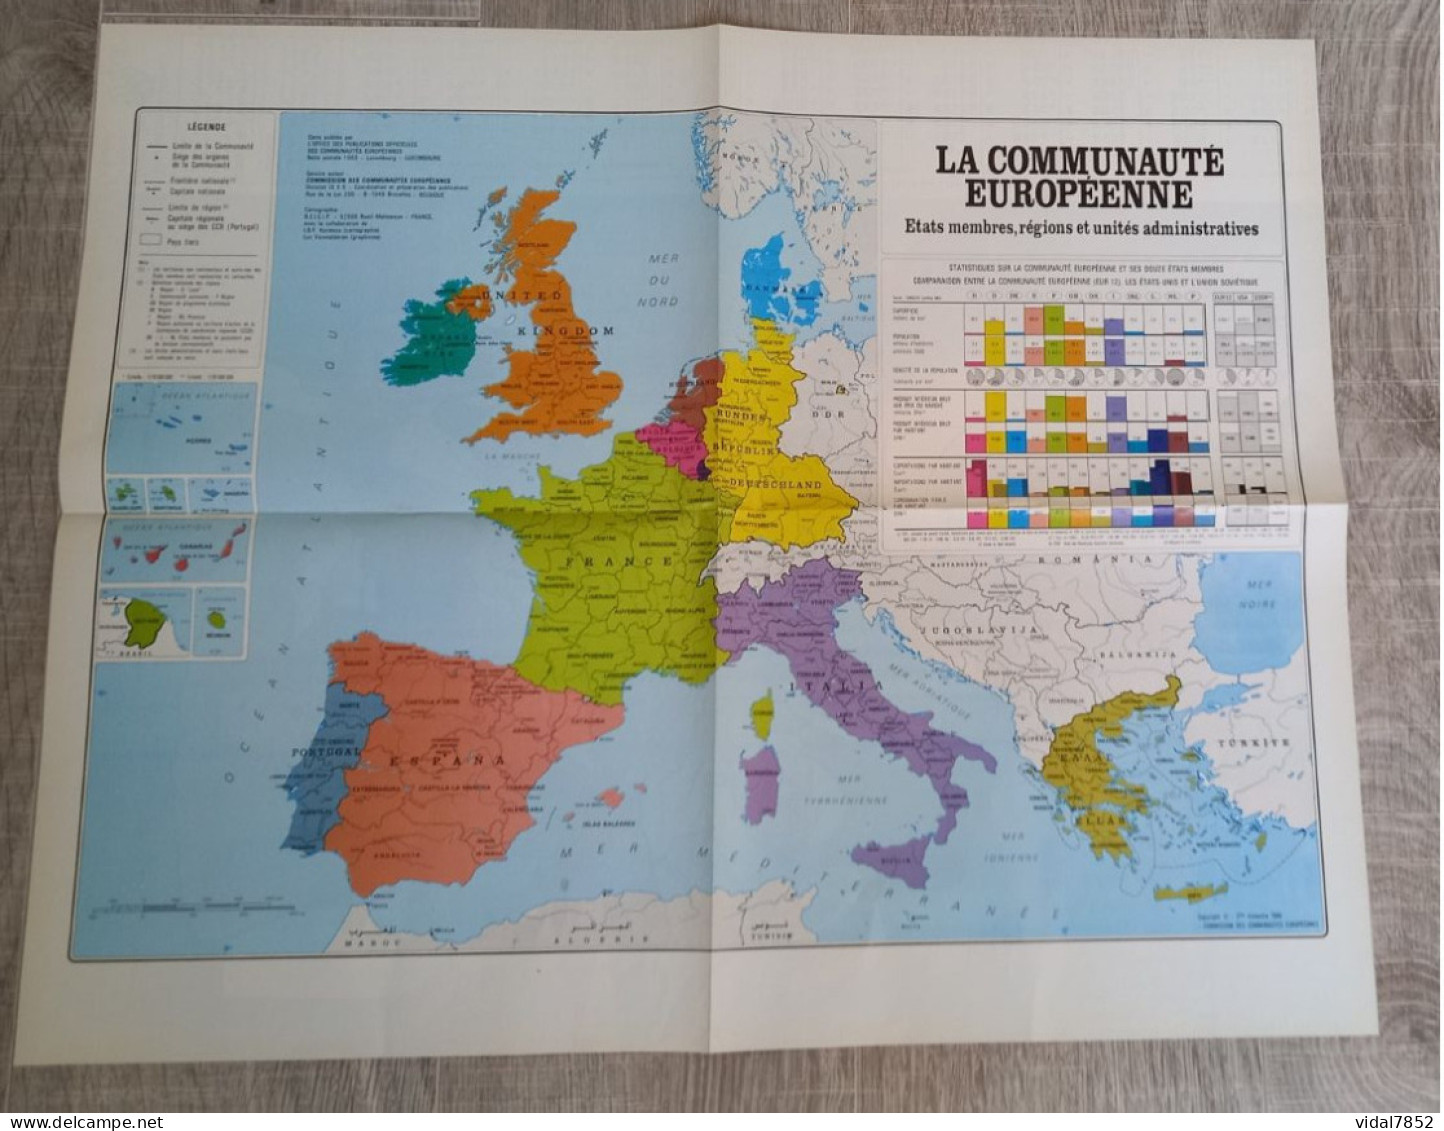 Calendrier-Almanach Des P.T.T 1991-Poster Intérieur Communauté Européenne--Tom Jerry Département AIN-01-Référence 416 - Big : 1991-00